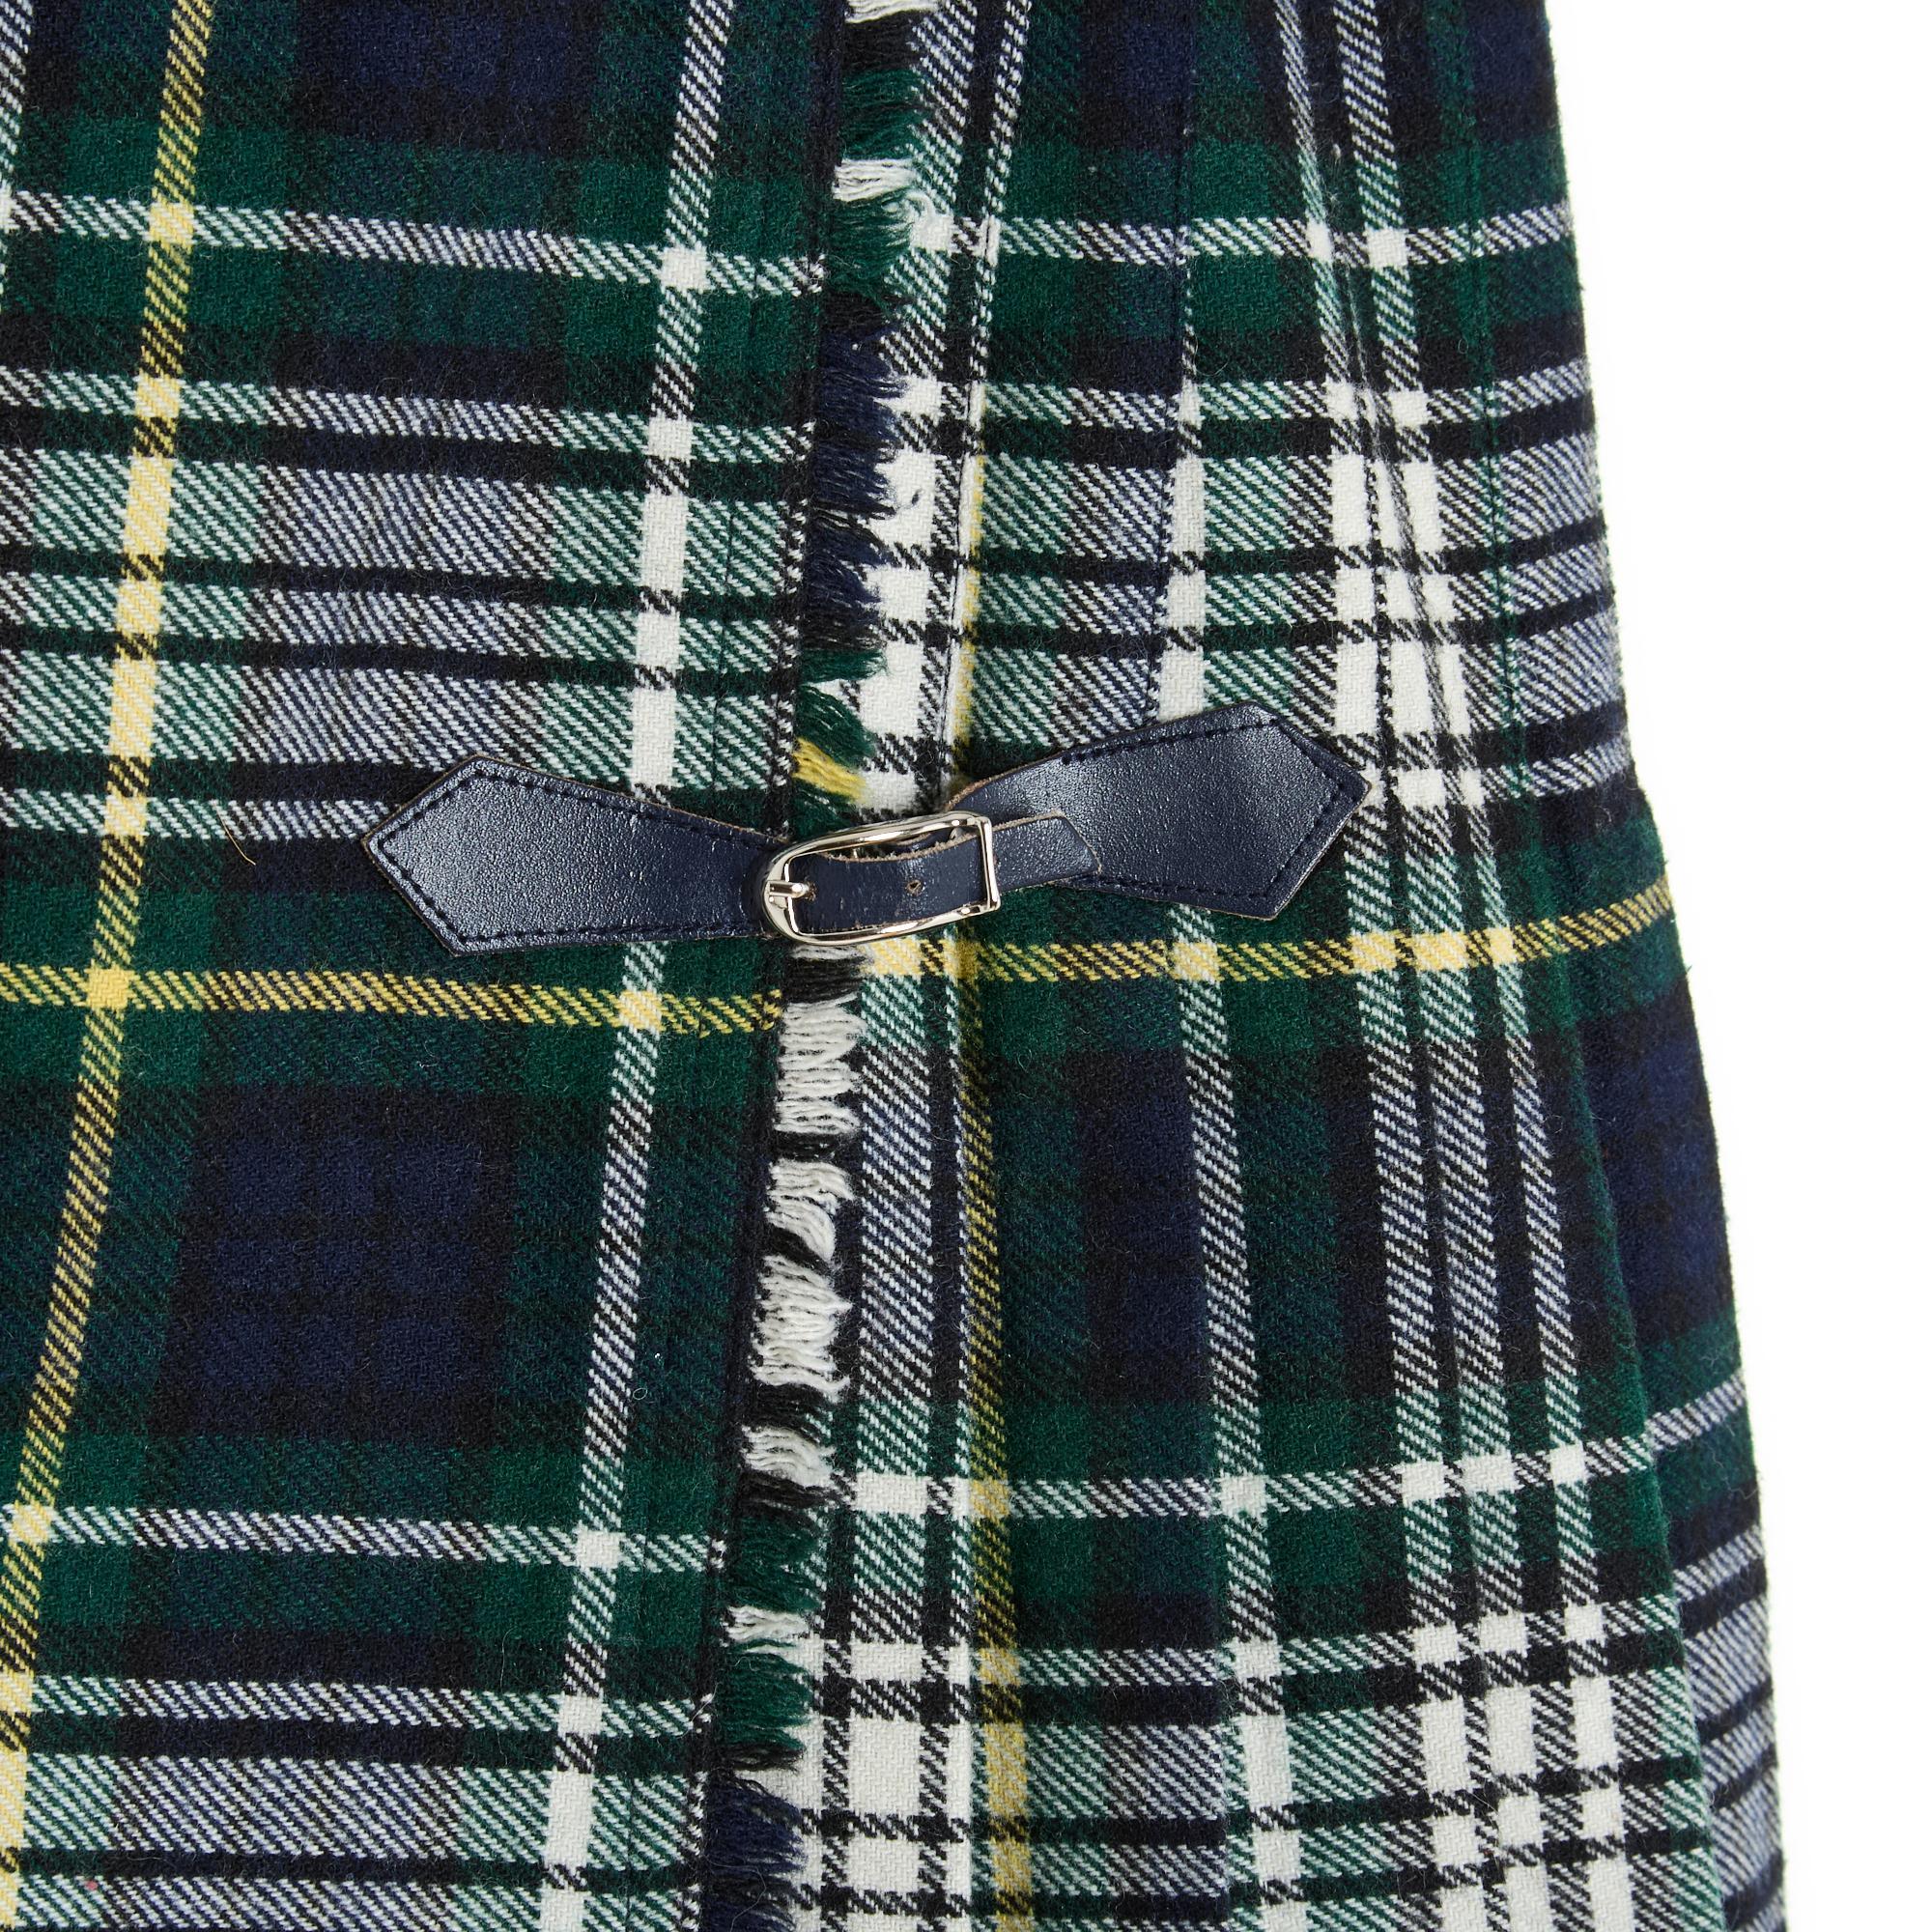 Kurzer, plissierter Wickelrock aus Wollgemisch mit Schottenkaro oder Karomuster in den Farben Marineblau, Grün und Ecru. Die Taille wird mit einem Knopf auf einer Seite und zwei marineblauen Lederlaschen an einer silbernen Metallschnalle